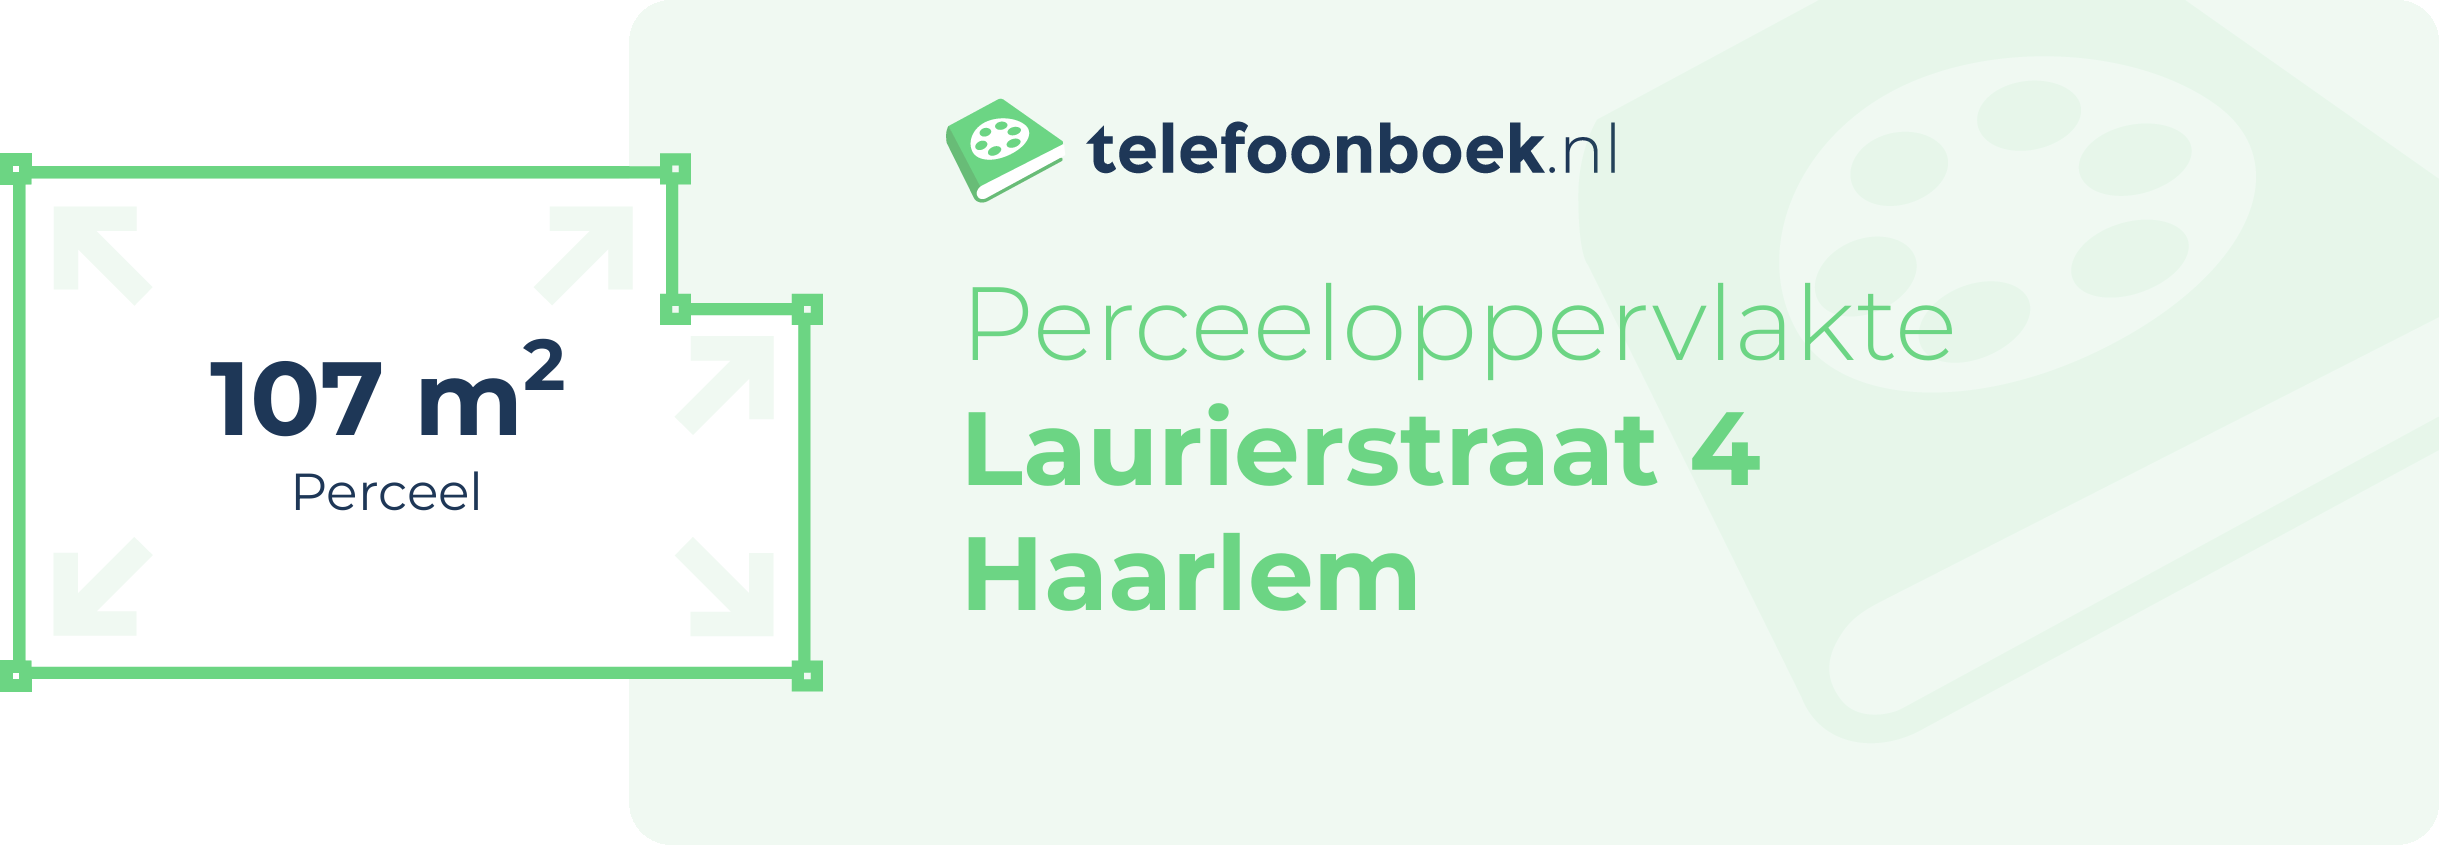 Perceeloppervlakte Laurierstraat 4 Haarlem